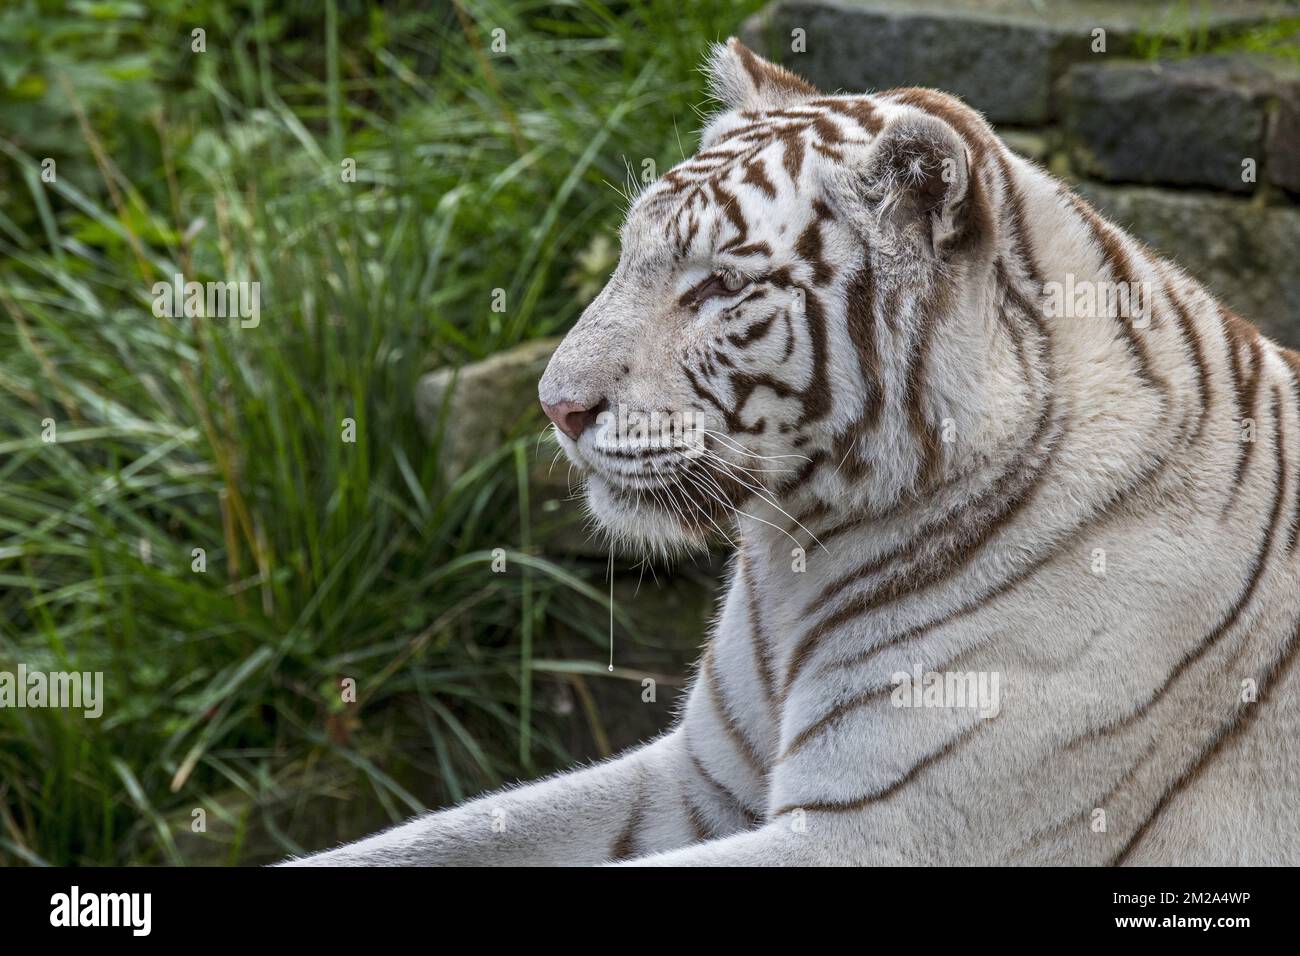 Tigre bianca / tigre sbiancata (Panthera tigris) variante di pigmentazione della tigre bengala, originaria dell'India | Tigre bianco (Panthera tigris) 20/09/2017 Foto Stock